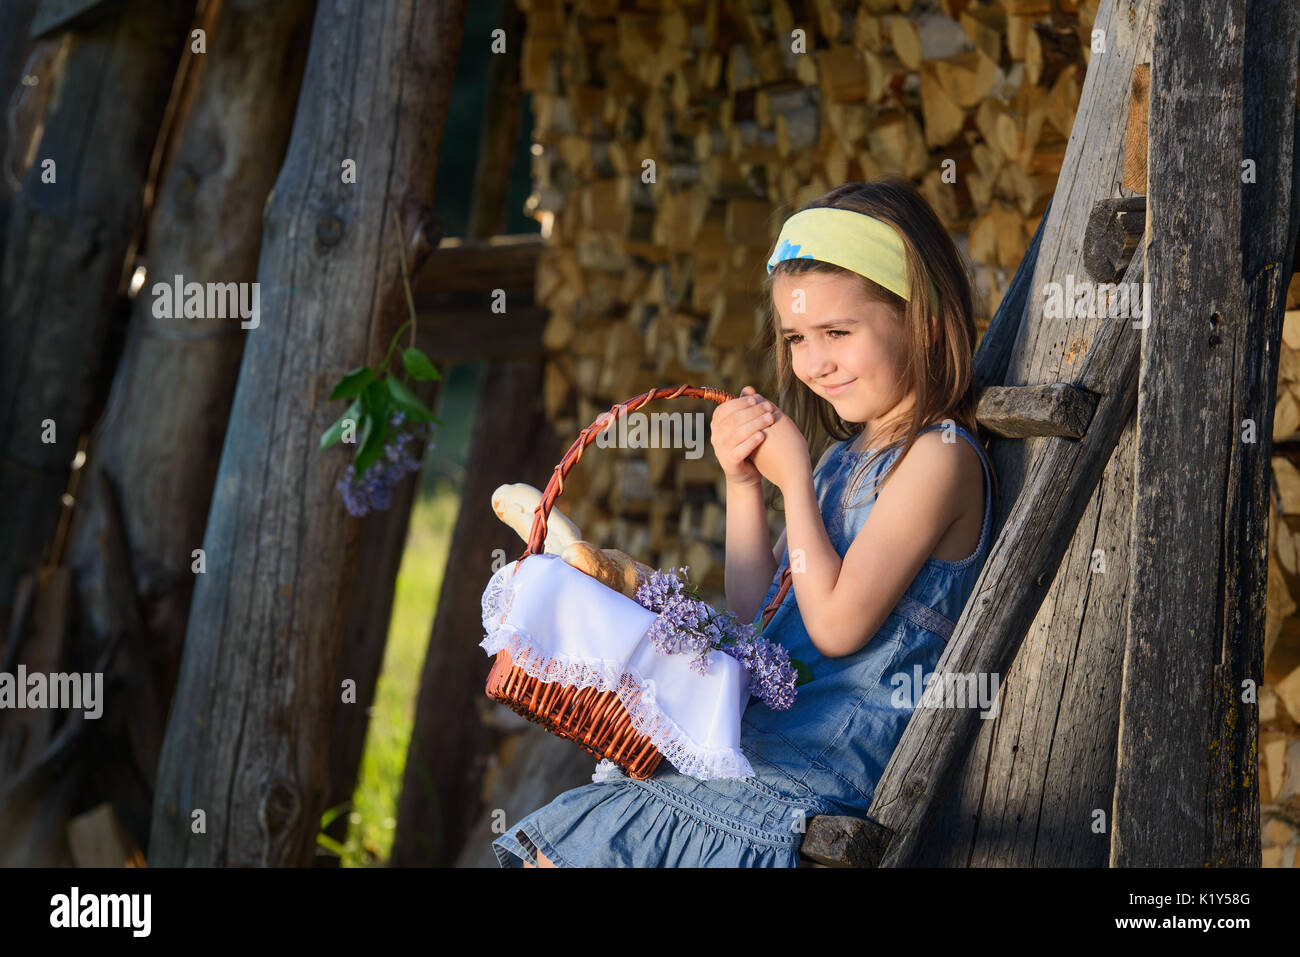 Süße Lächeln kleines Mädchen hält einen Korb mit Blumen. Portrait im Profil. Stockfoto